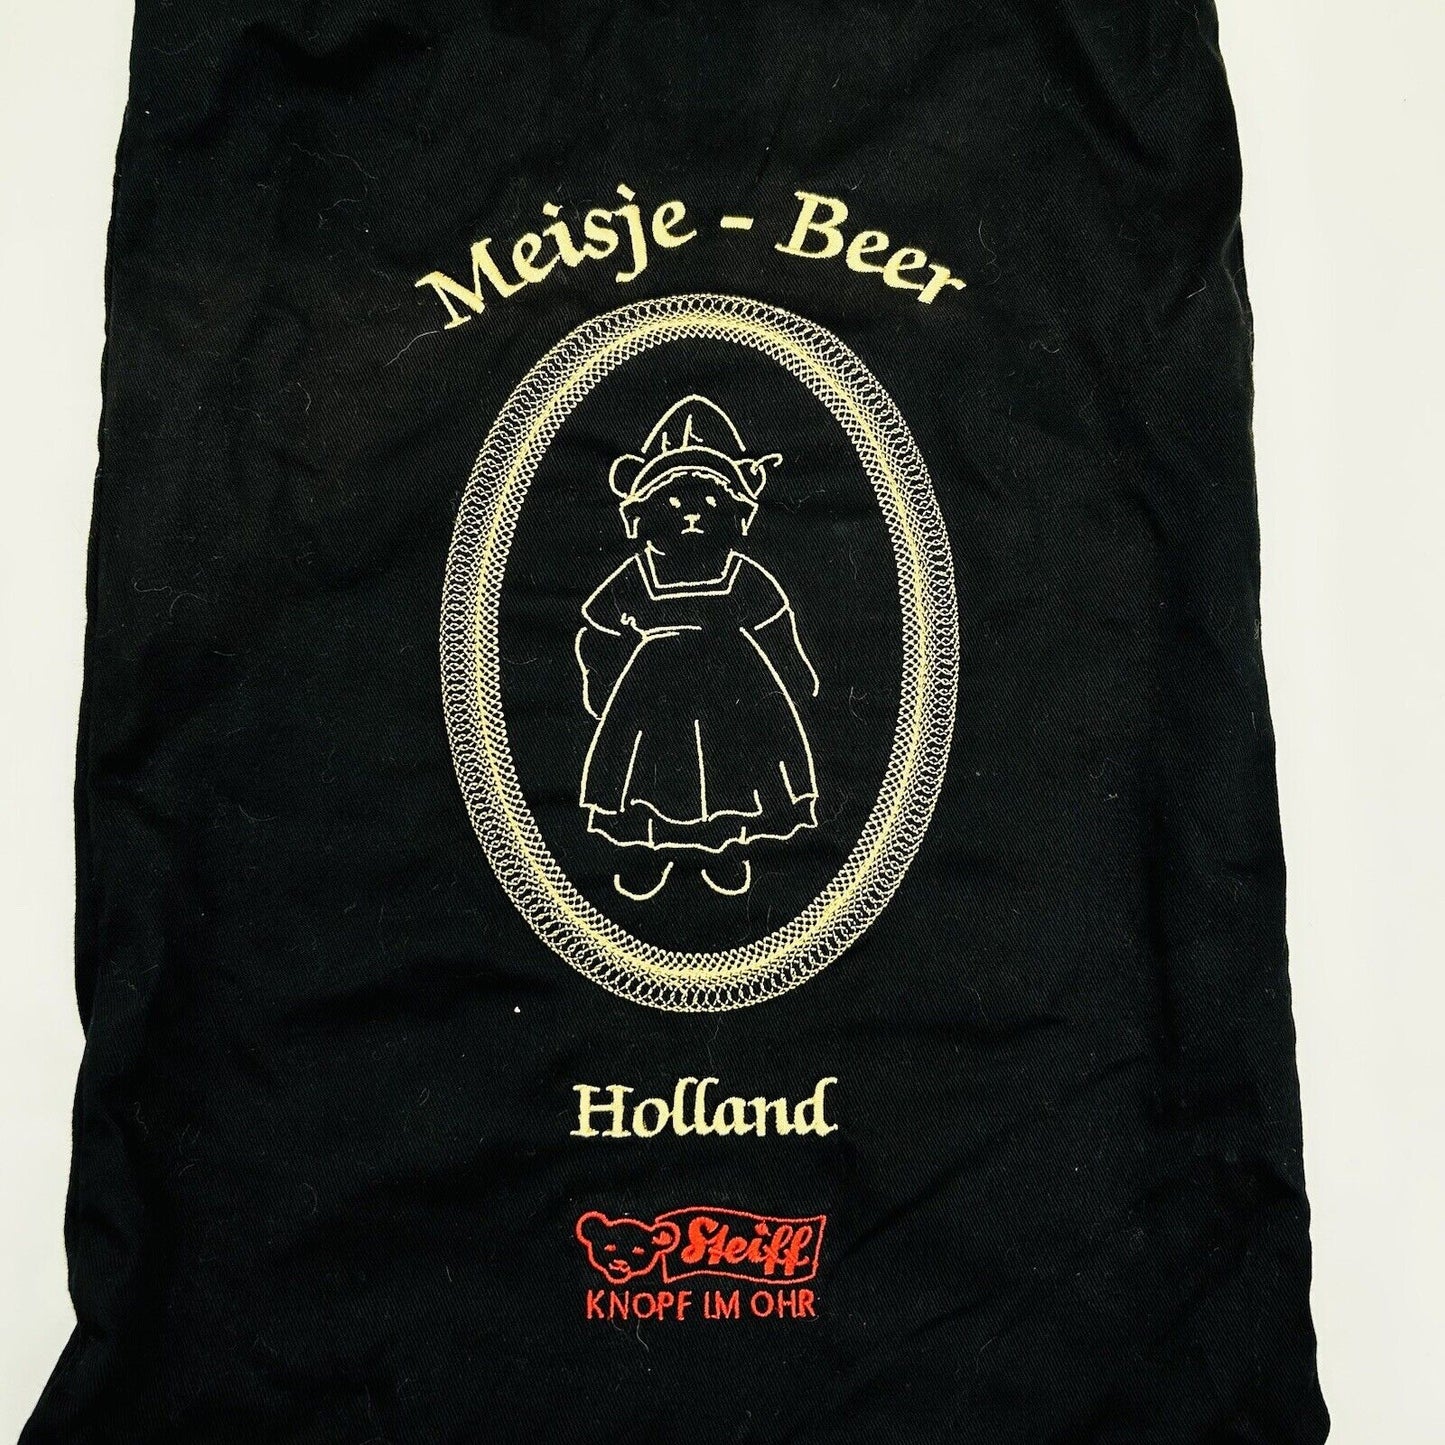 Steiff Holland Teddybär Meisje Beer 661426 mit Holzschuhen limitiert 1500